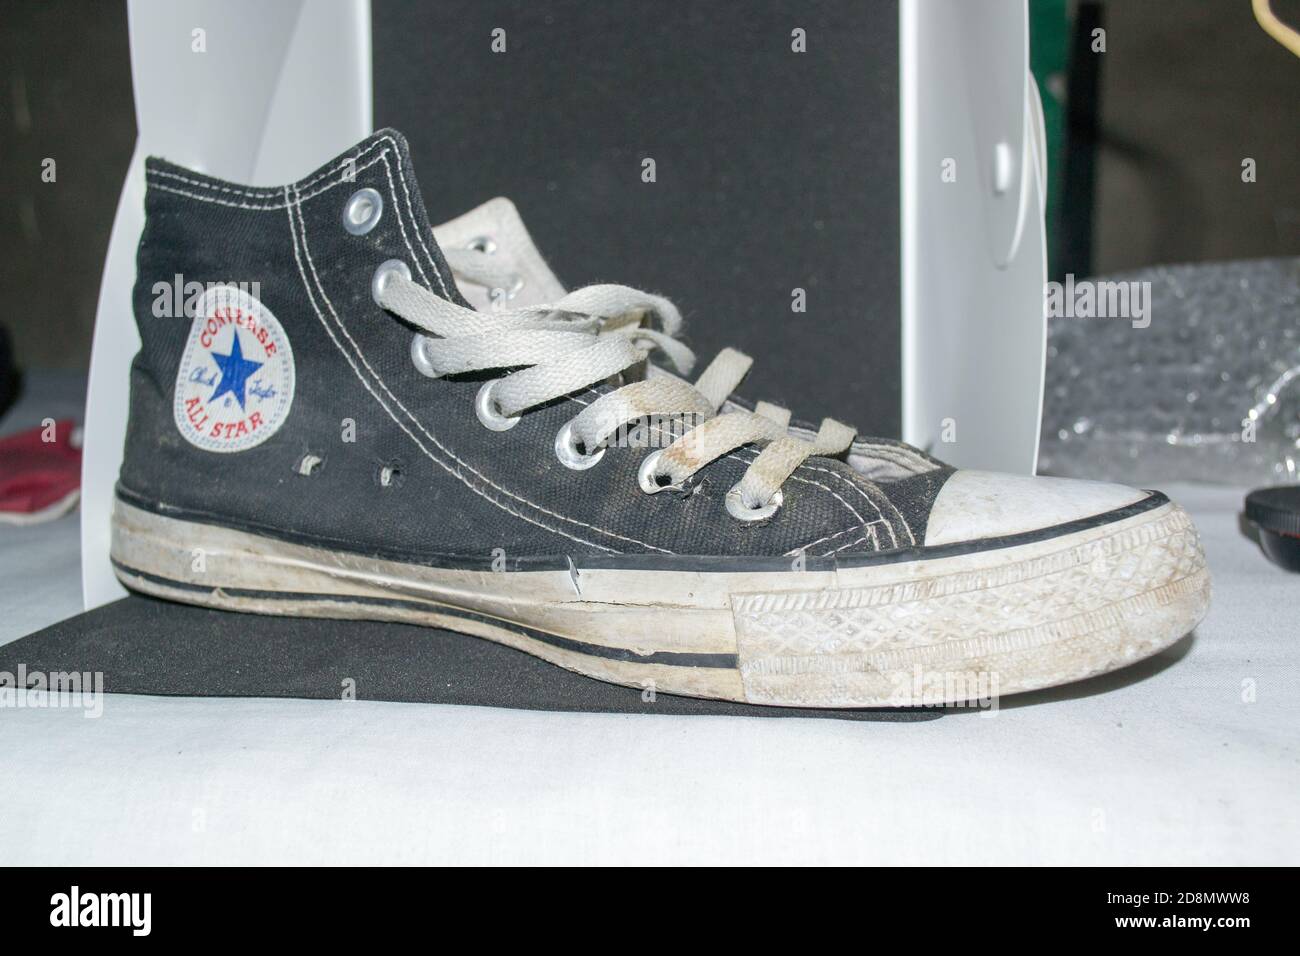 Alte schmutzige Paar High Cut converse alle Sterne Schuhe, die ursprünglich  als Basketballschuhe vor entwickelt wurde. Berühmte Schuhe von Chuck taylor  Stockfotografie - Alamy